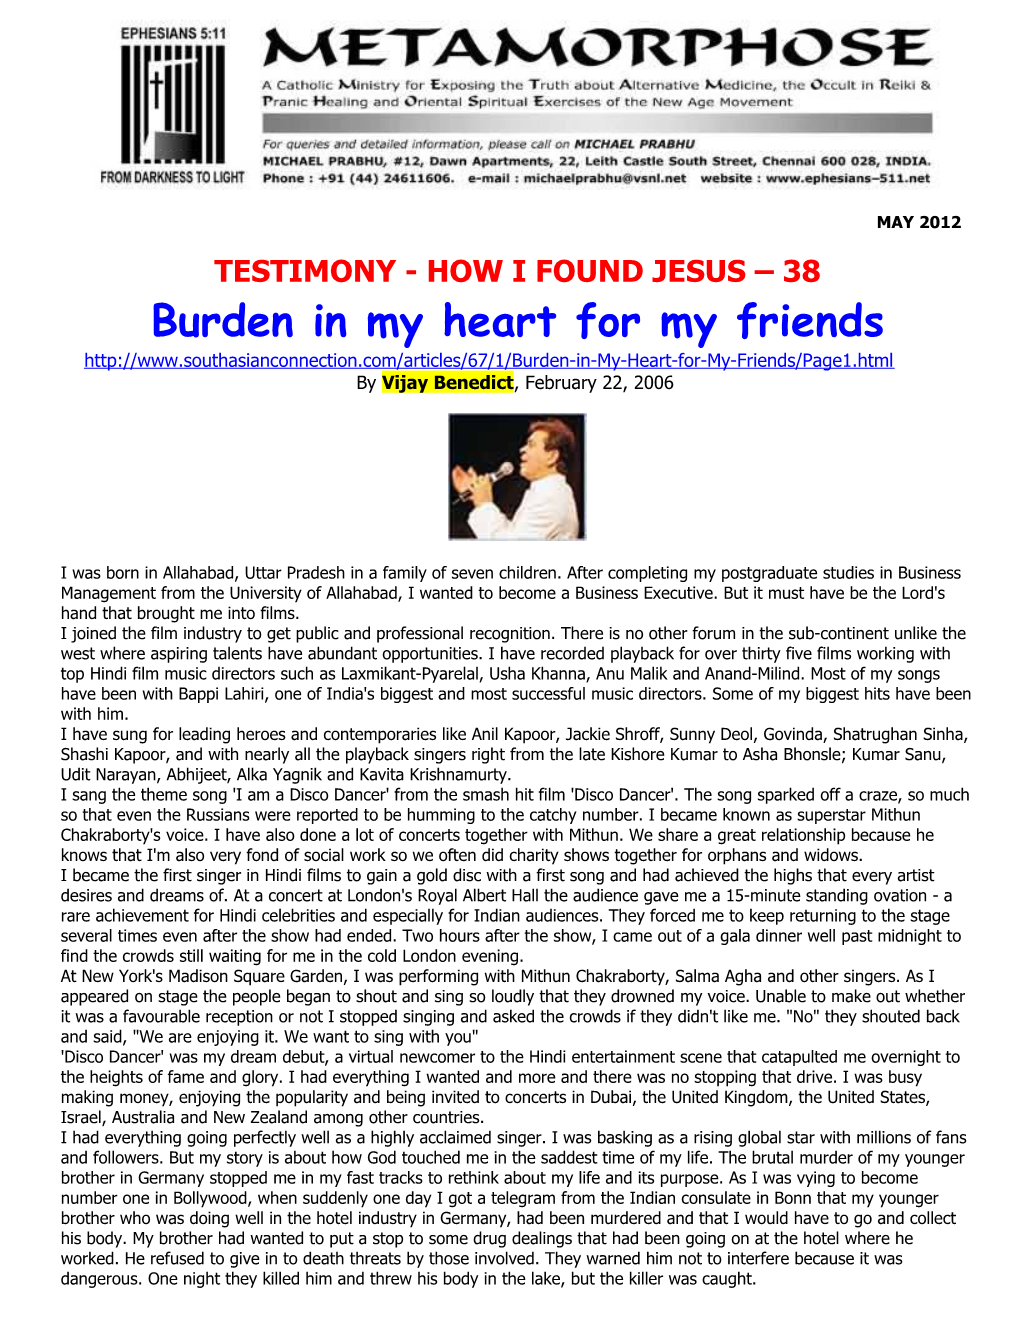 Testimony- How I Found Jesus 38